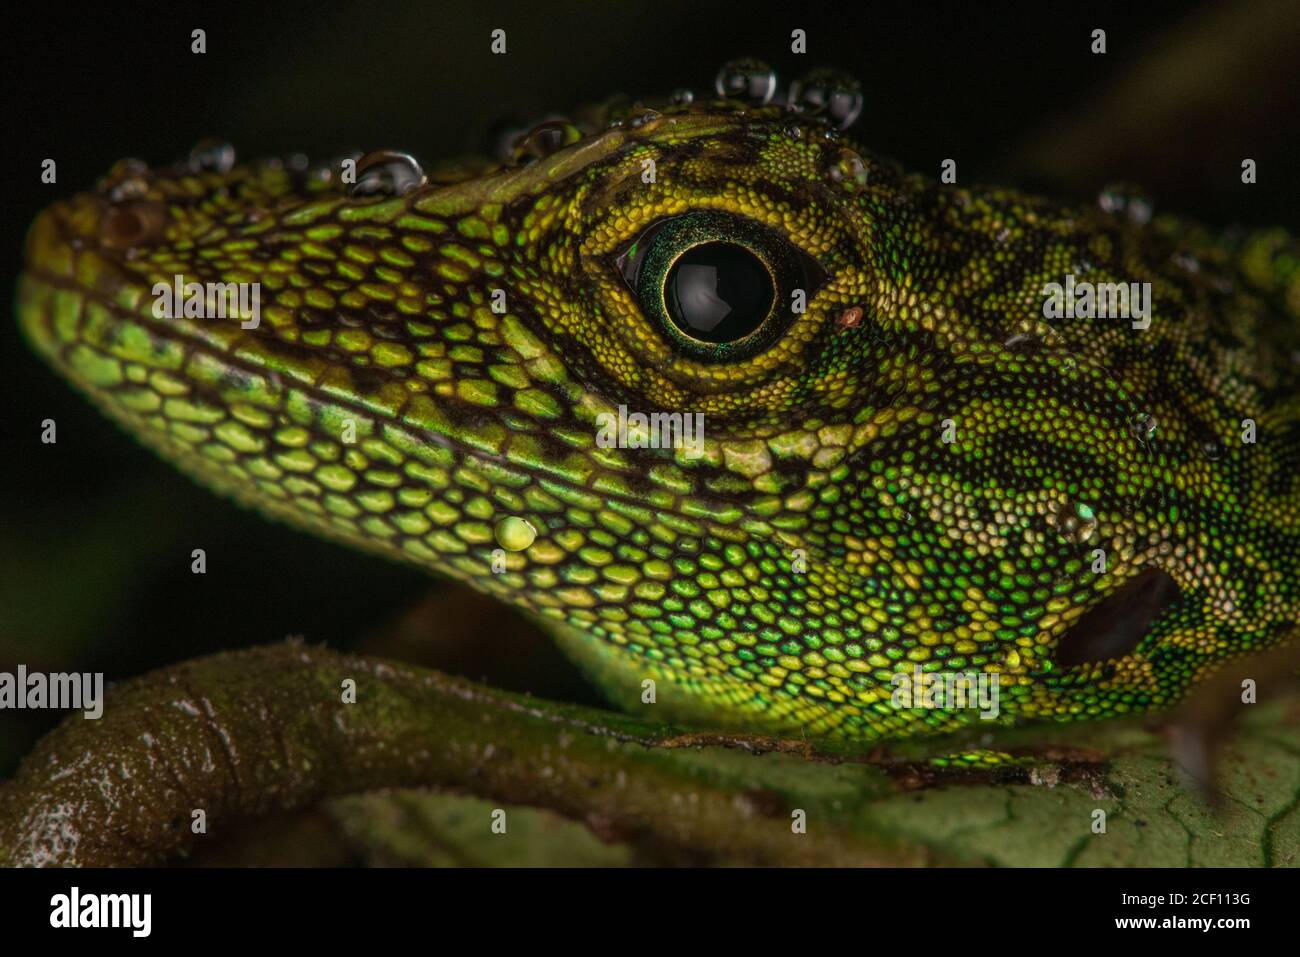 Das Gesicht einer äquatorialen Anole (Anolis aequatorialis) eine Eidechsart, die im ecuadorianischen Regenwald gefunden wird. Stockfoto